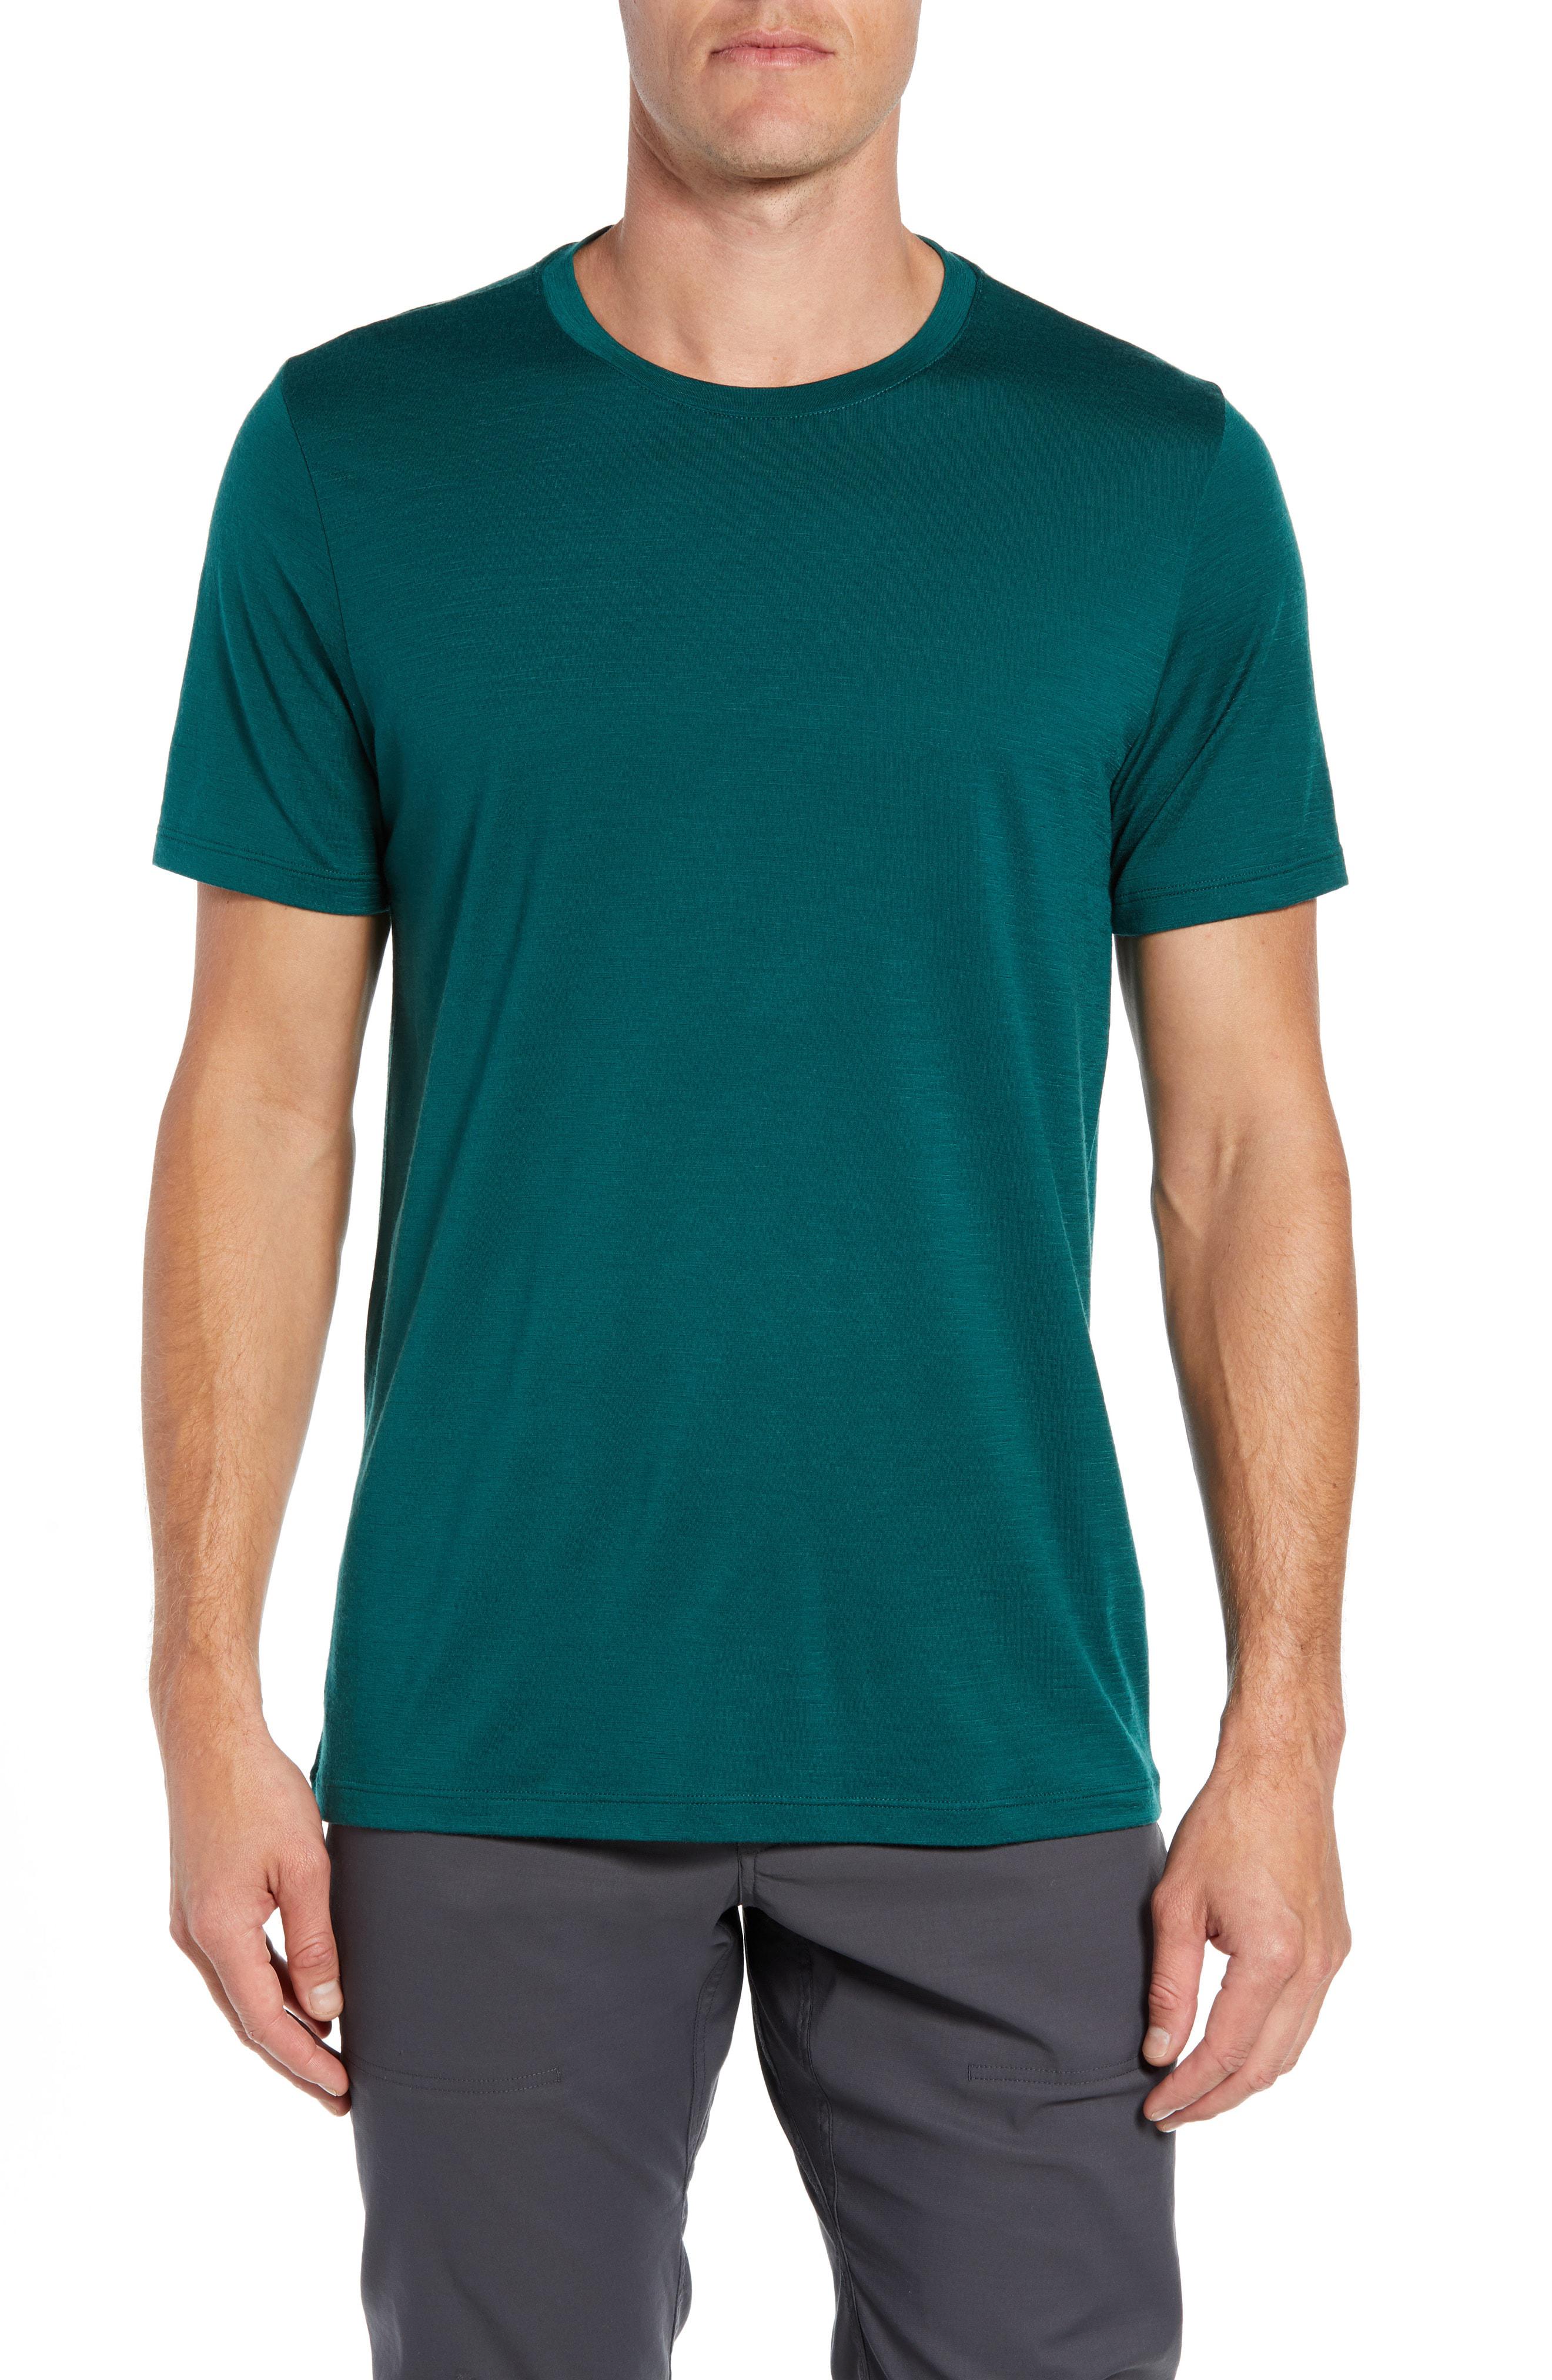 Lyst - Icebreaker Tech Lite Short Sleeve Crewneck T-shirt in Black for Men